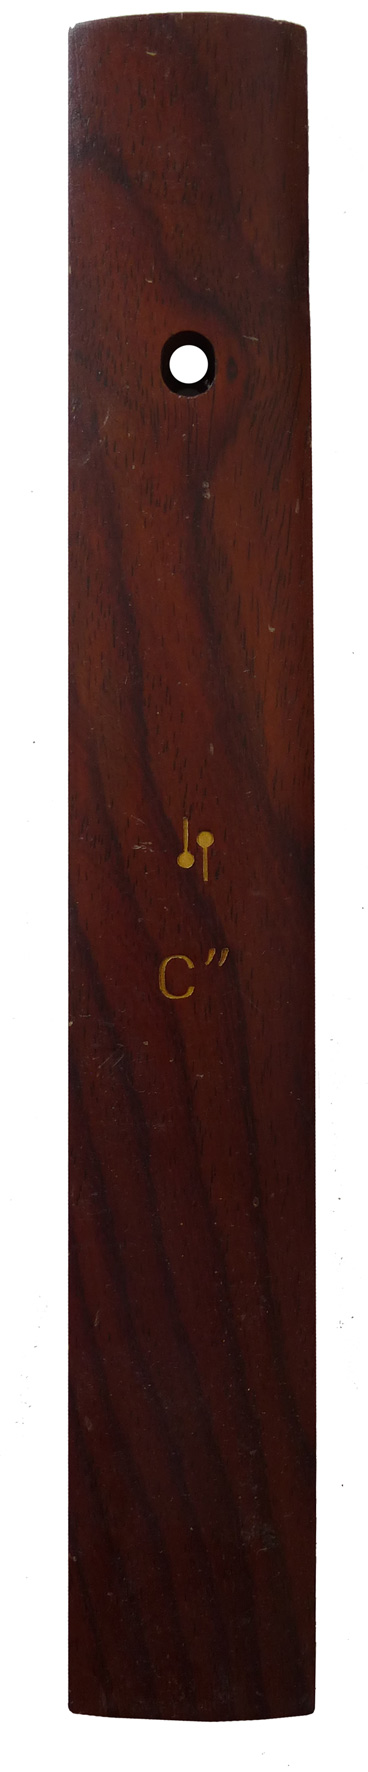 Sonor KPP37x18 'Meisterklasse' Rosewood Xylophone Bars